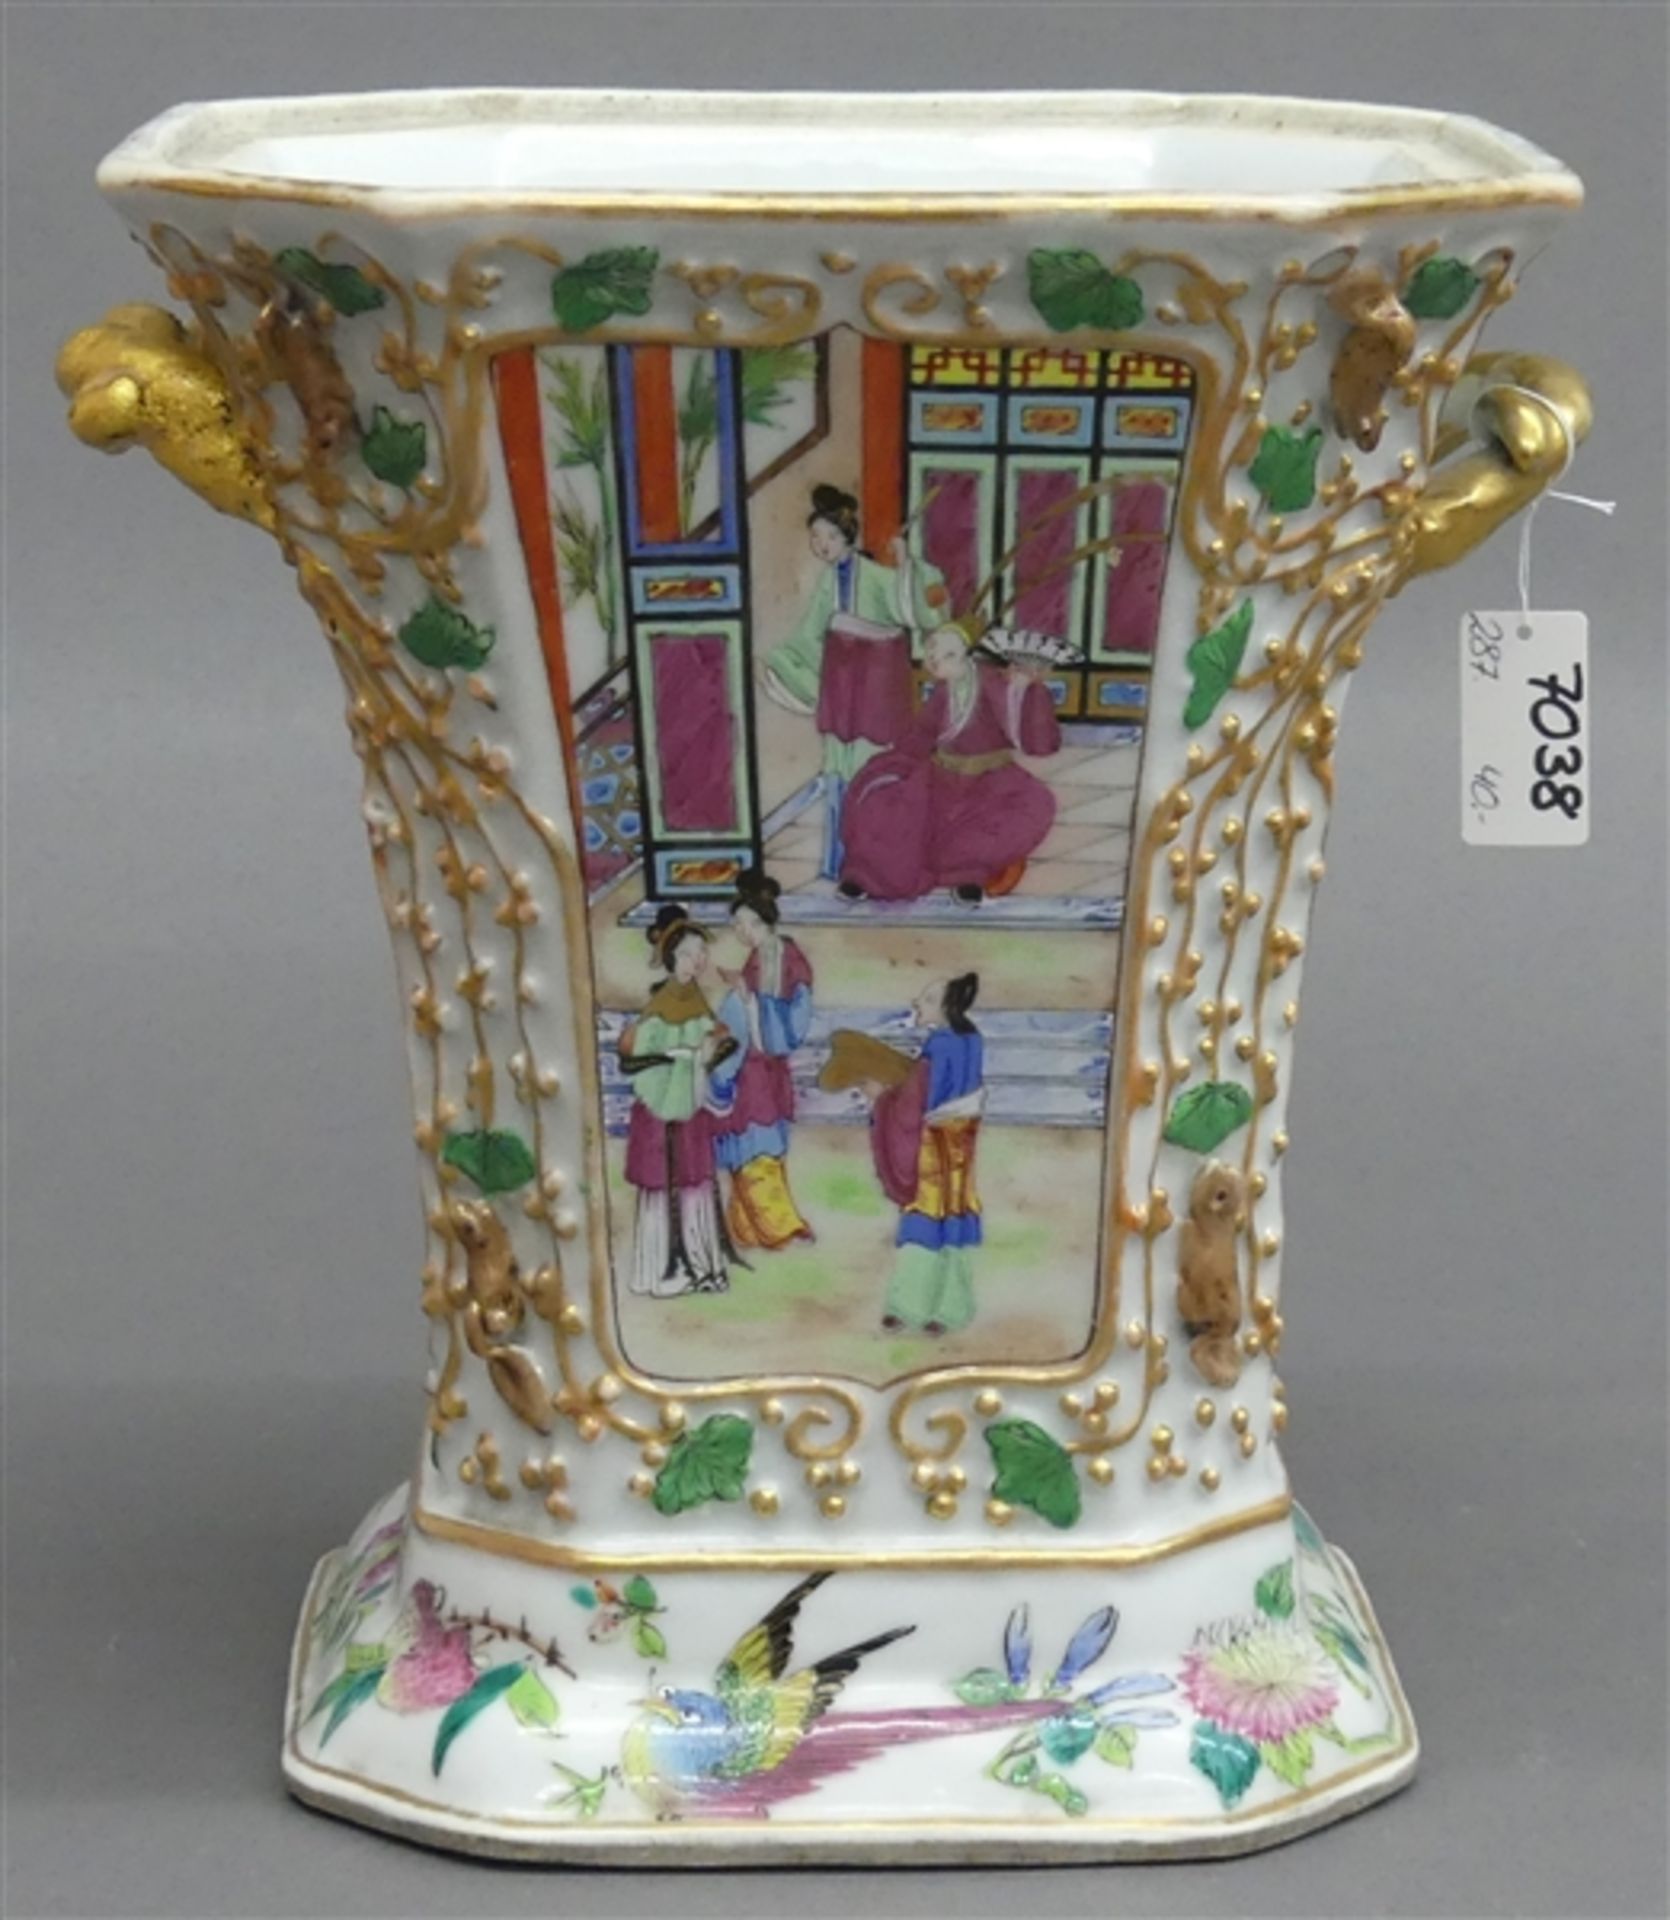 PorzellanübertopfChina, um 1920, restauriert, bunter floraler Dekor, beidseitiger Henkel, h 22 cm,